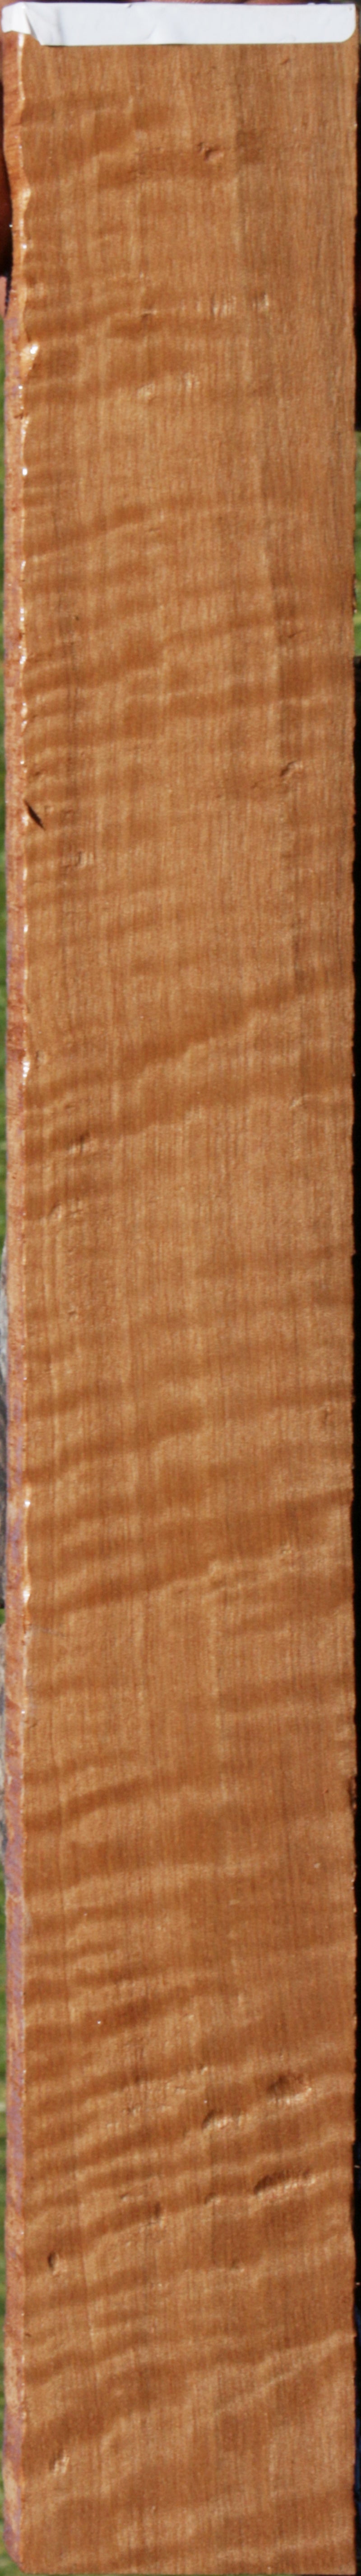 Curly Pyinma Micro Lumber